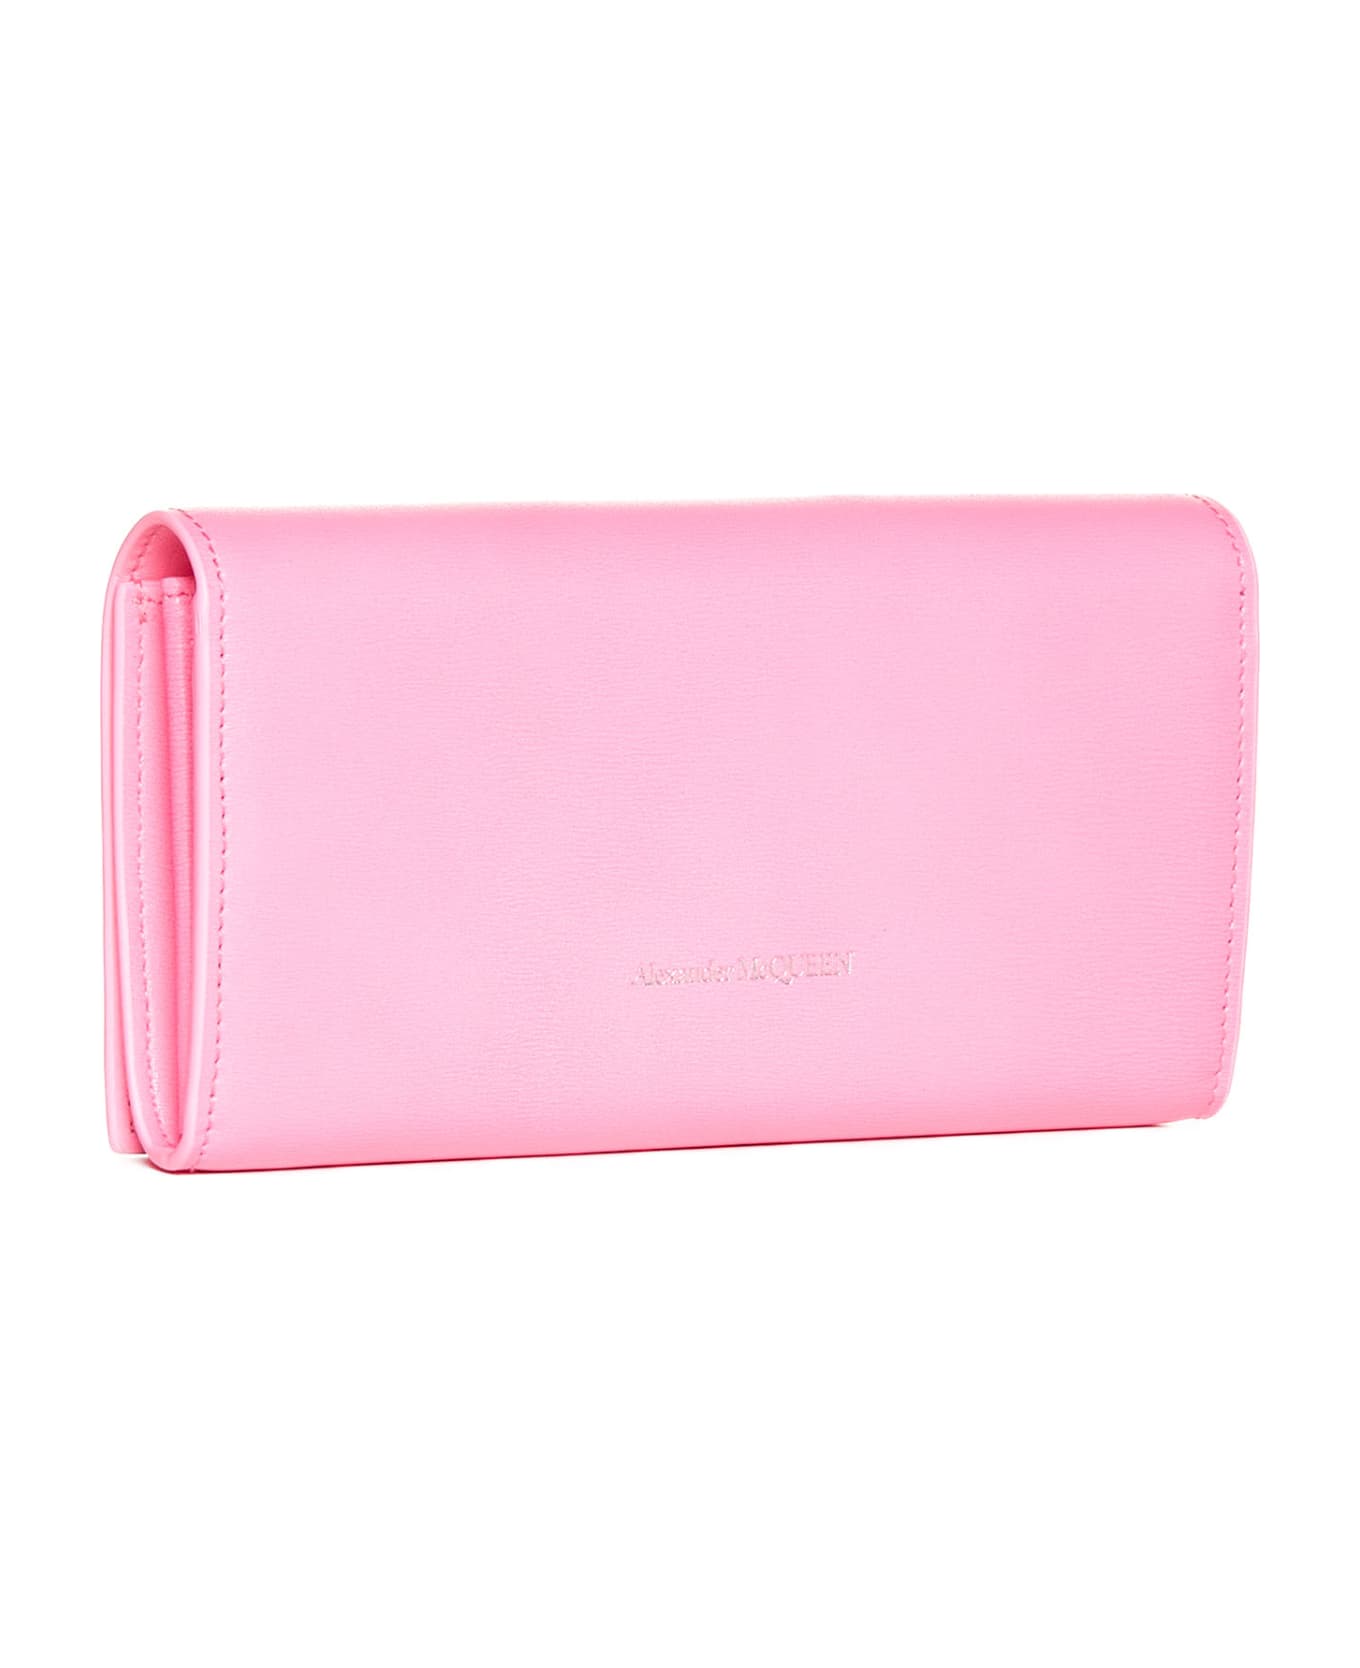 Alexander McQueen Leather Wallet - Fluo pink 財布